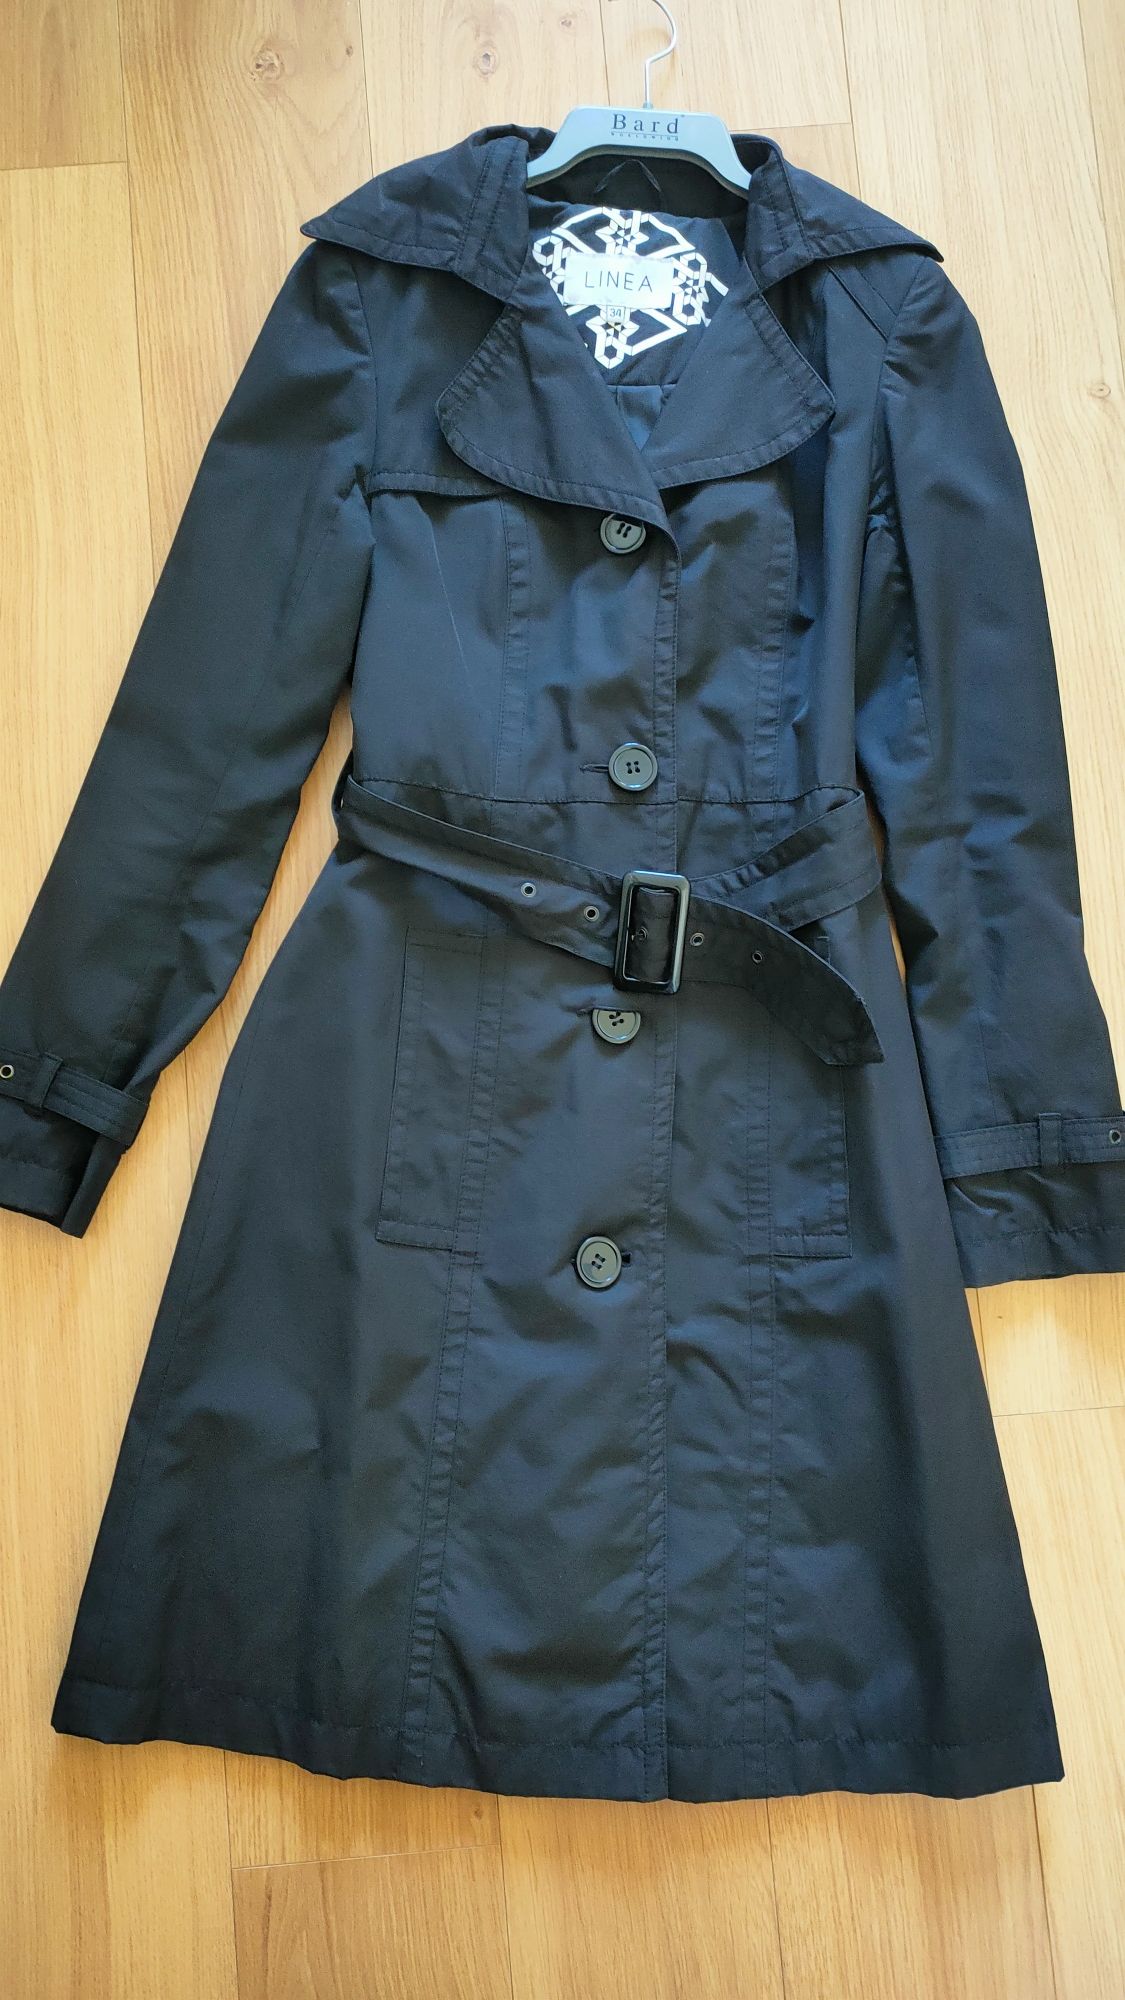 Czarny płaszcz  trencz damski Linea 34 S